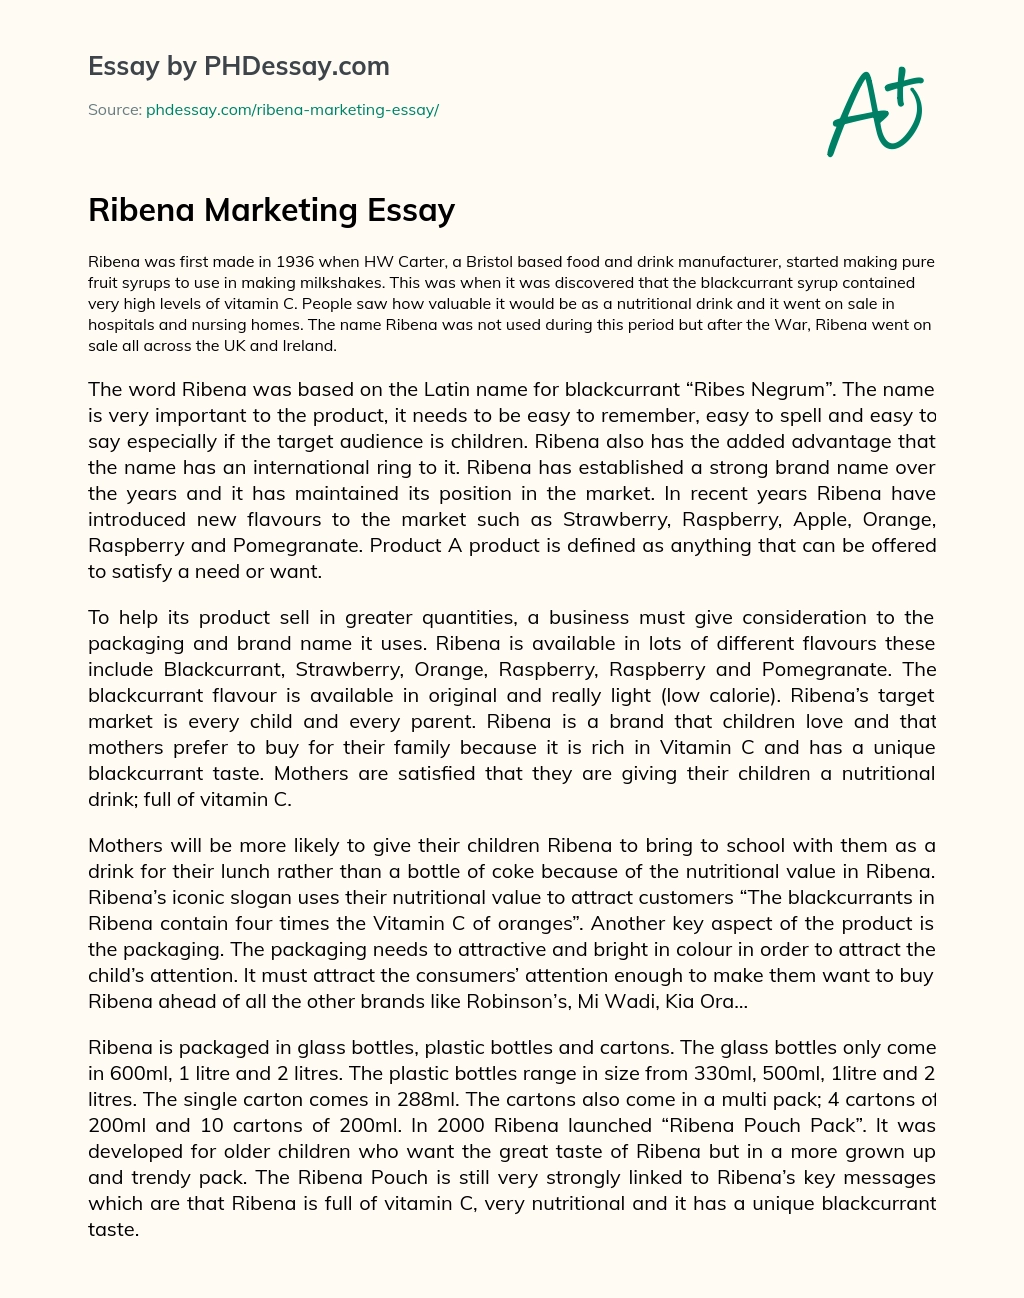 Ribena Marketing Essay essay